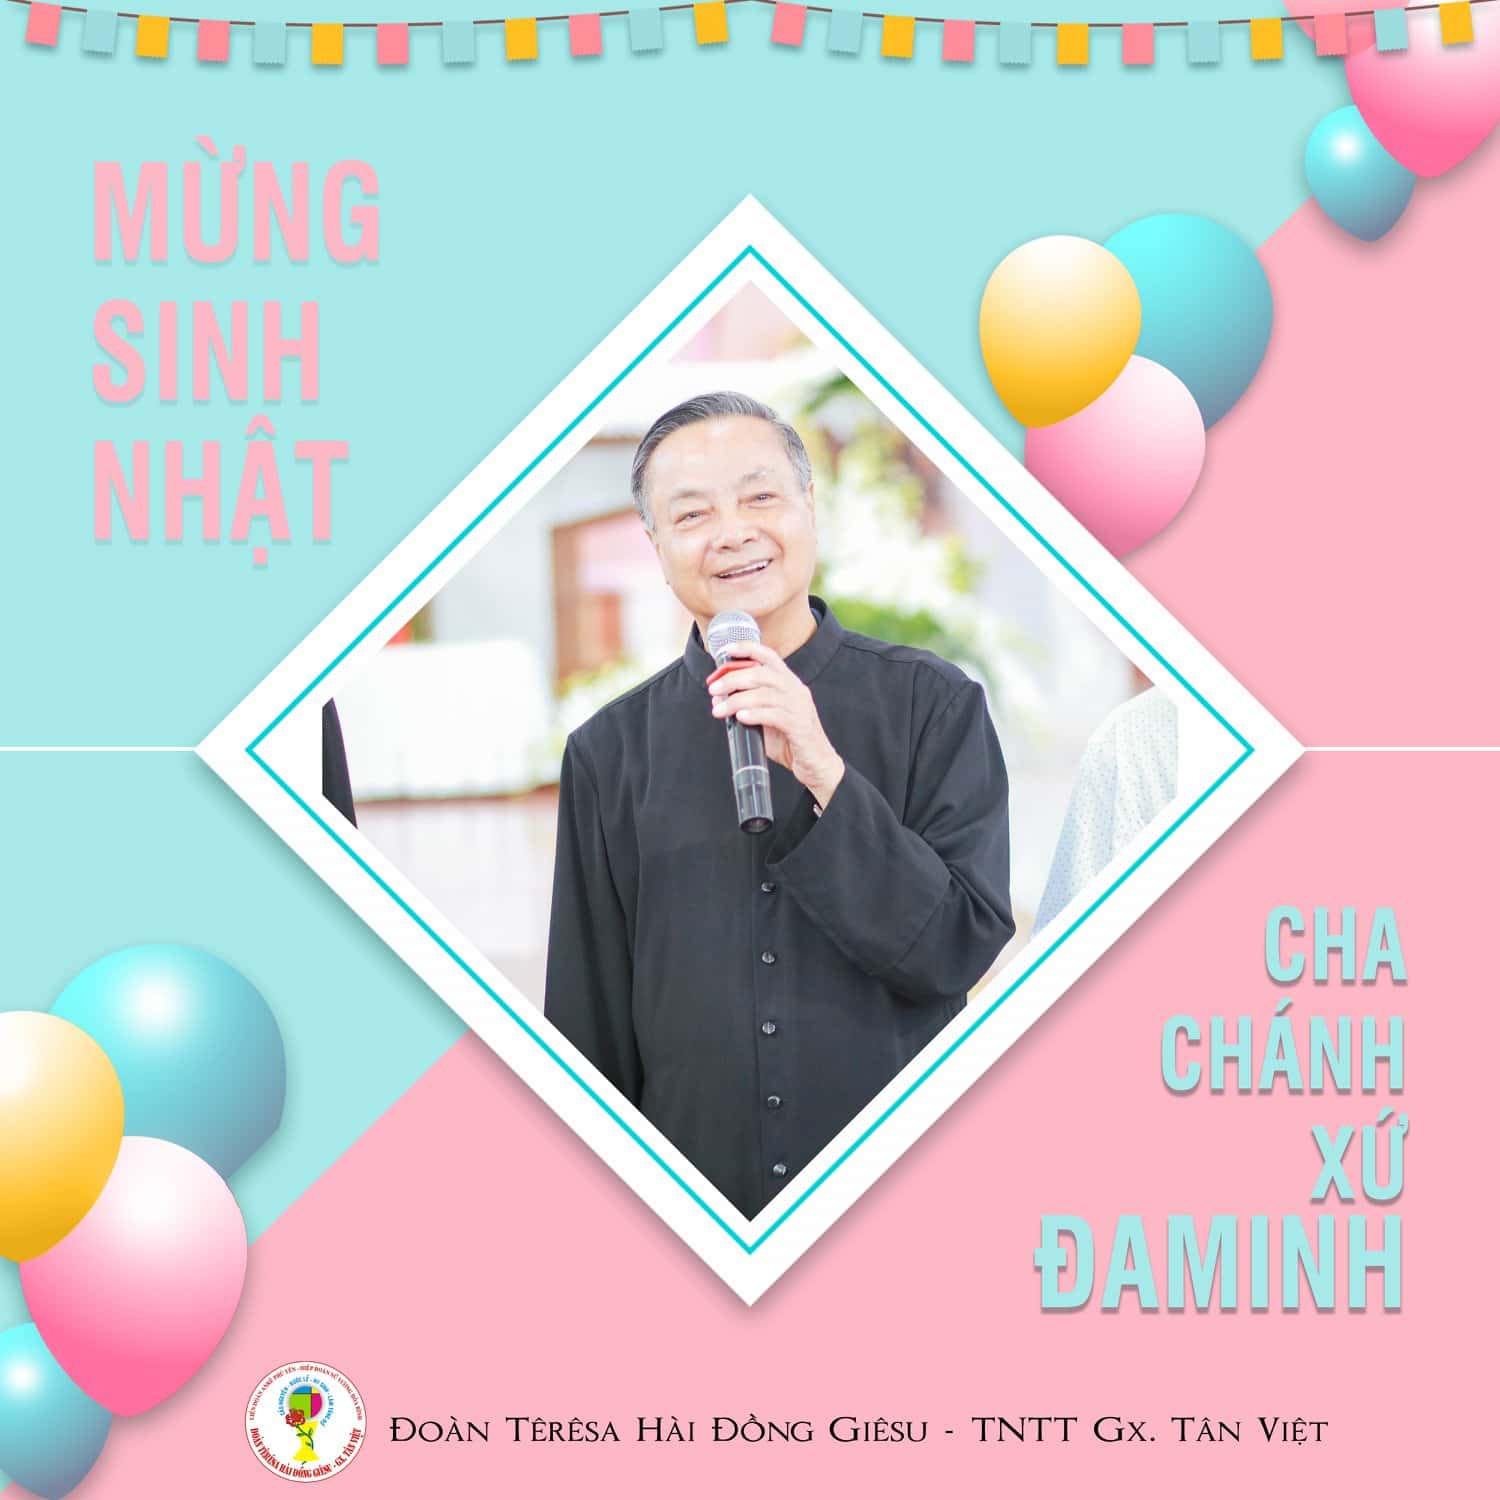 Chúc mừng sinh nhật Cha Chánh Xứ Đaminh () – Đoàn Têrêsa Hài Đồng  Giêsu Tân Việt